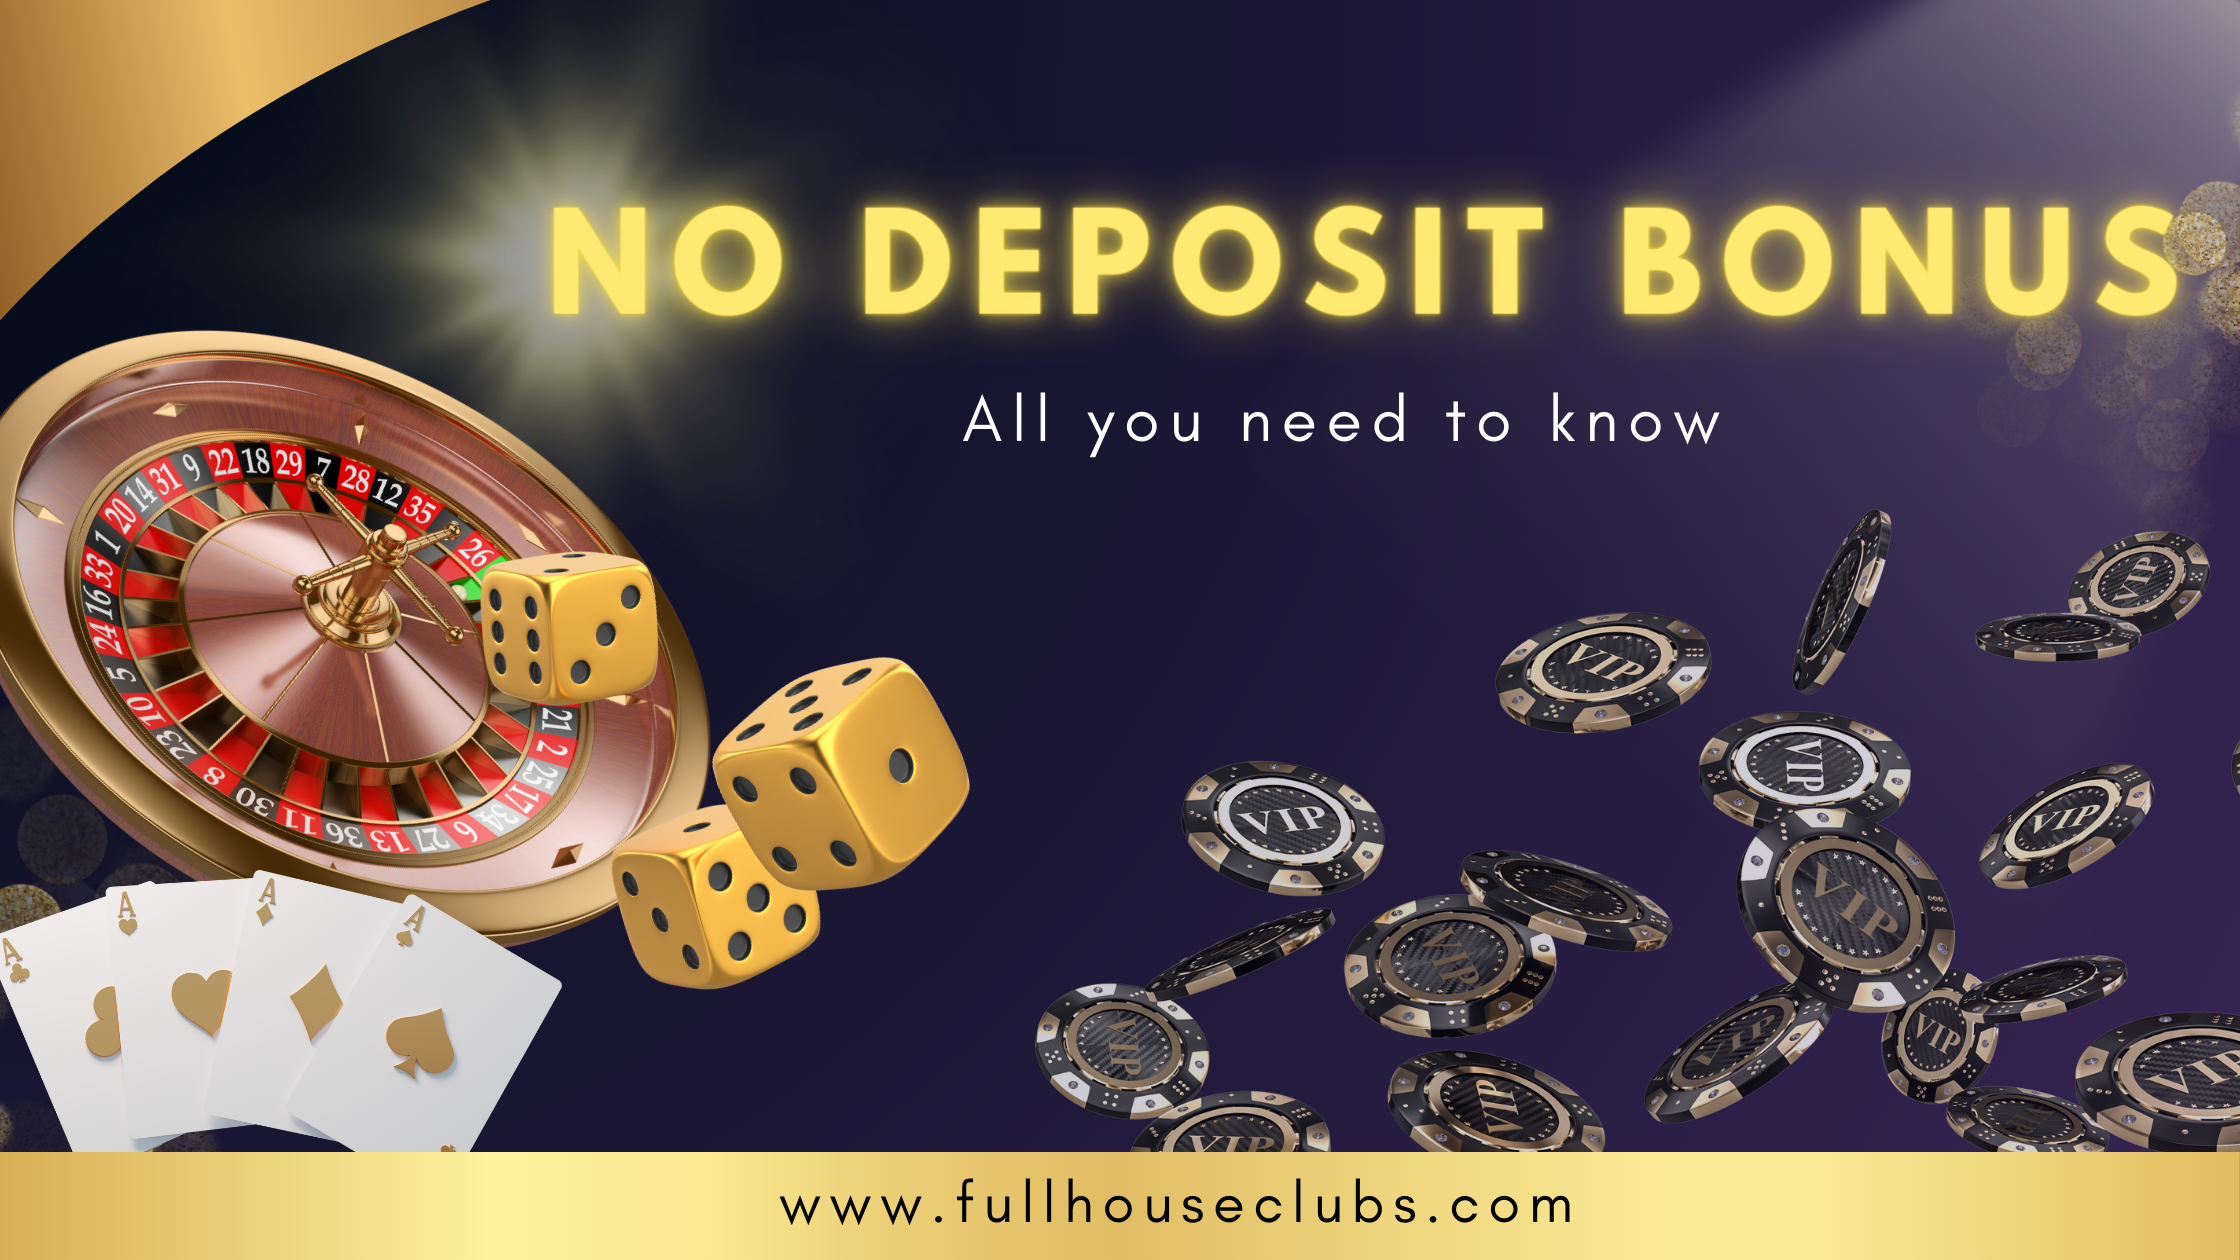 No deposit bonus - Featured image